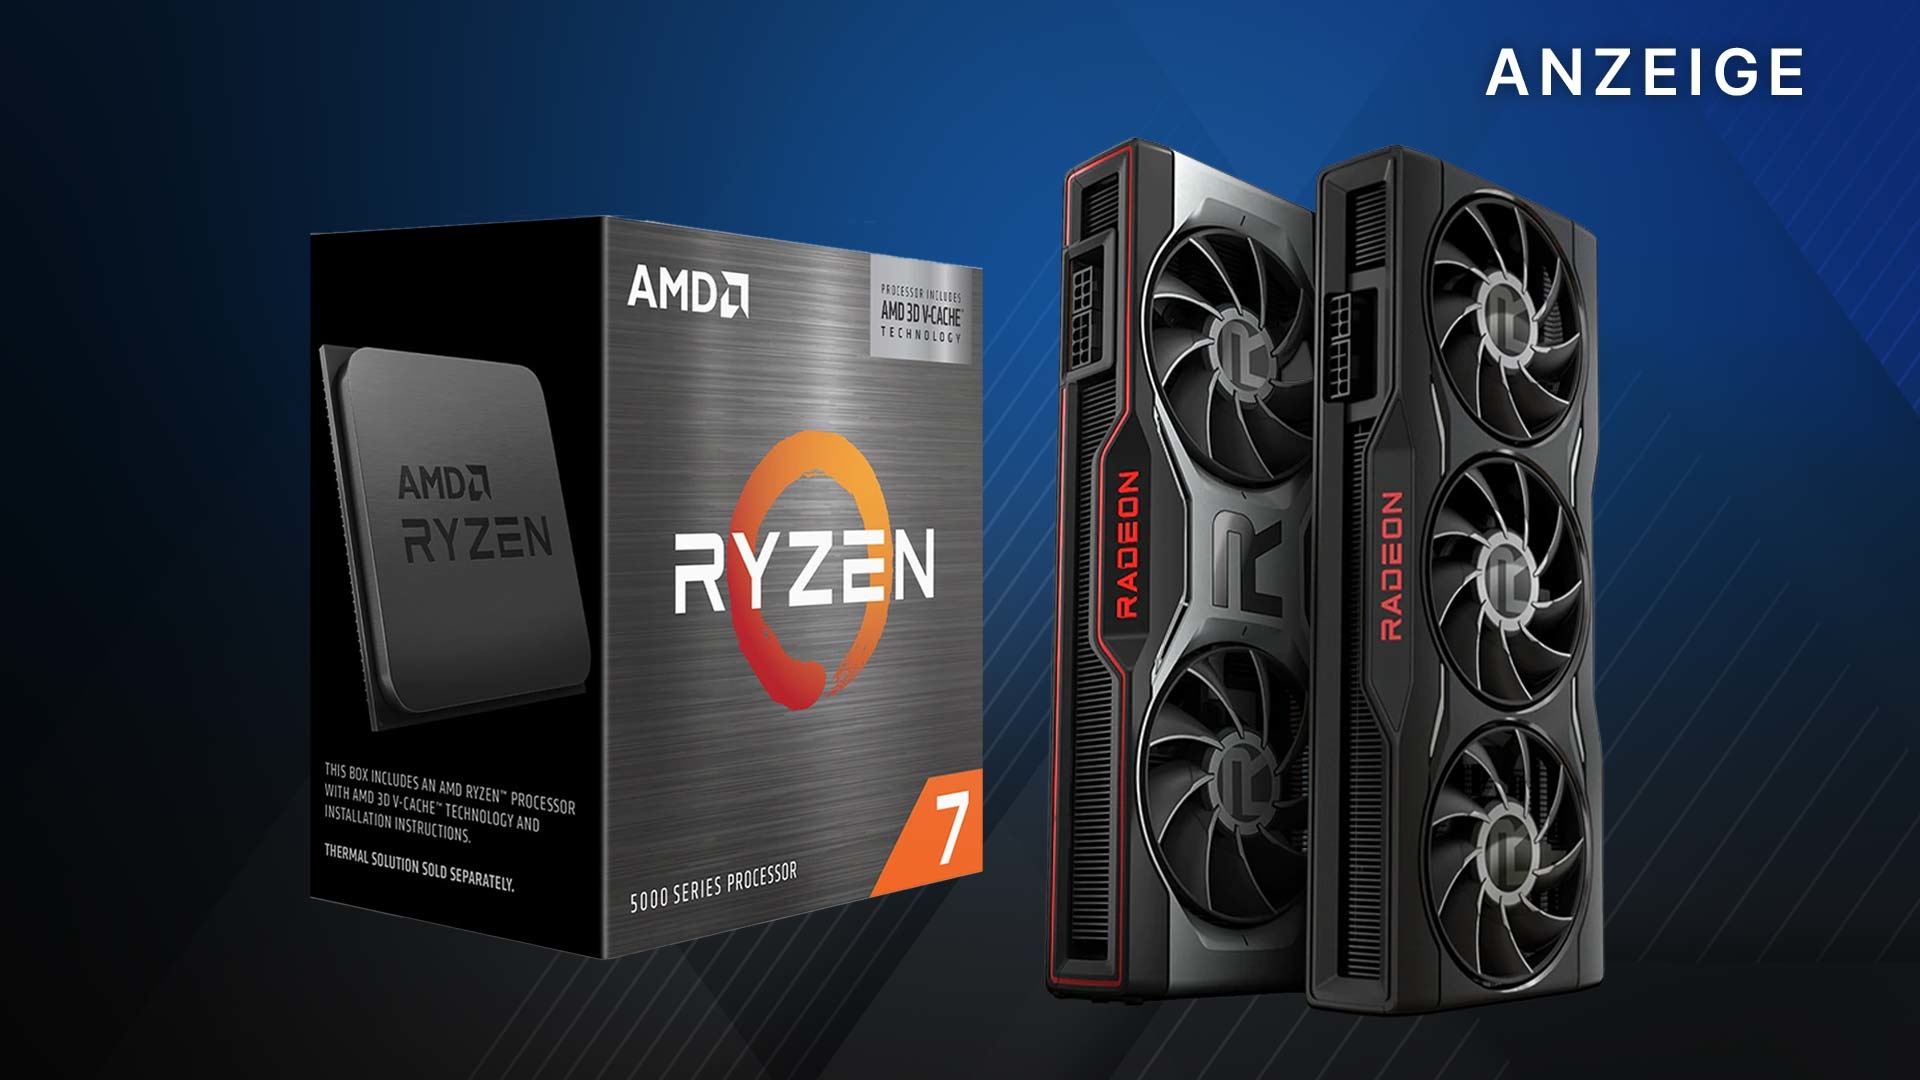 Zwei starke Vorteile, Radeon™-Grafikkarte von ihr AMD eine nutzt wenn Prozessor einen Ryzen™ gleichzeitig und